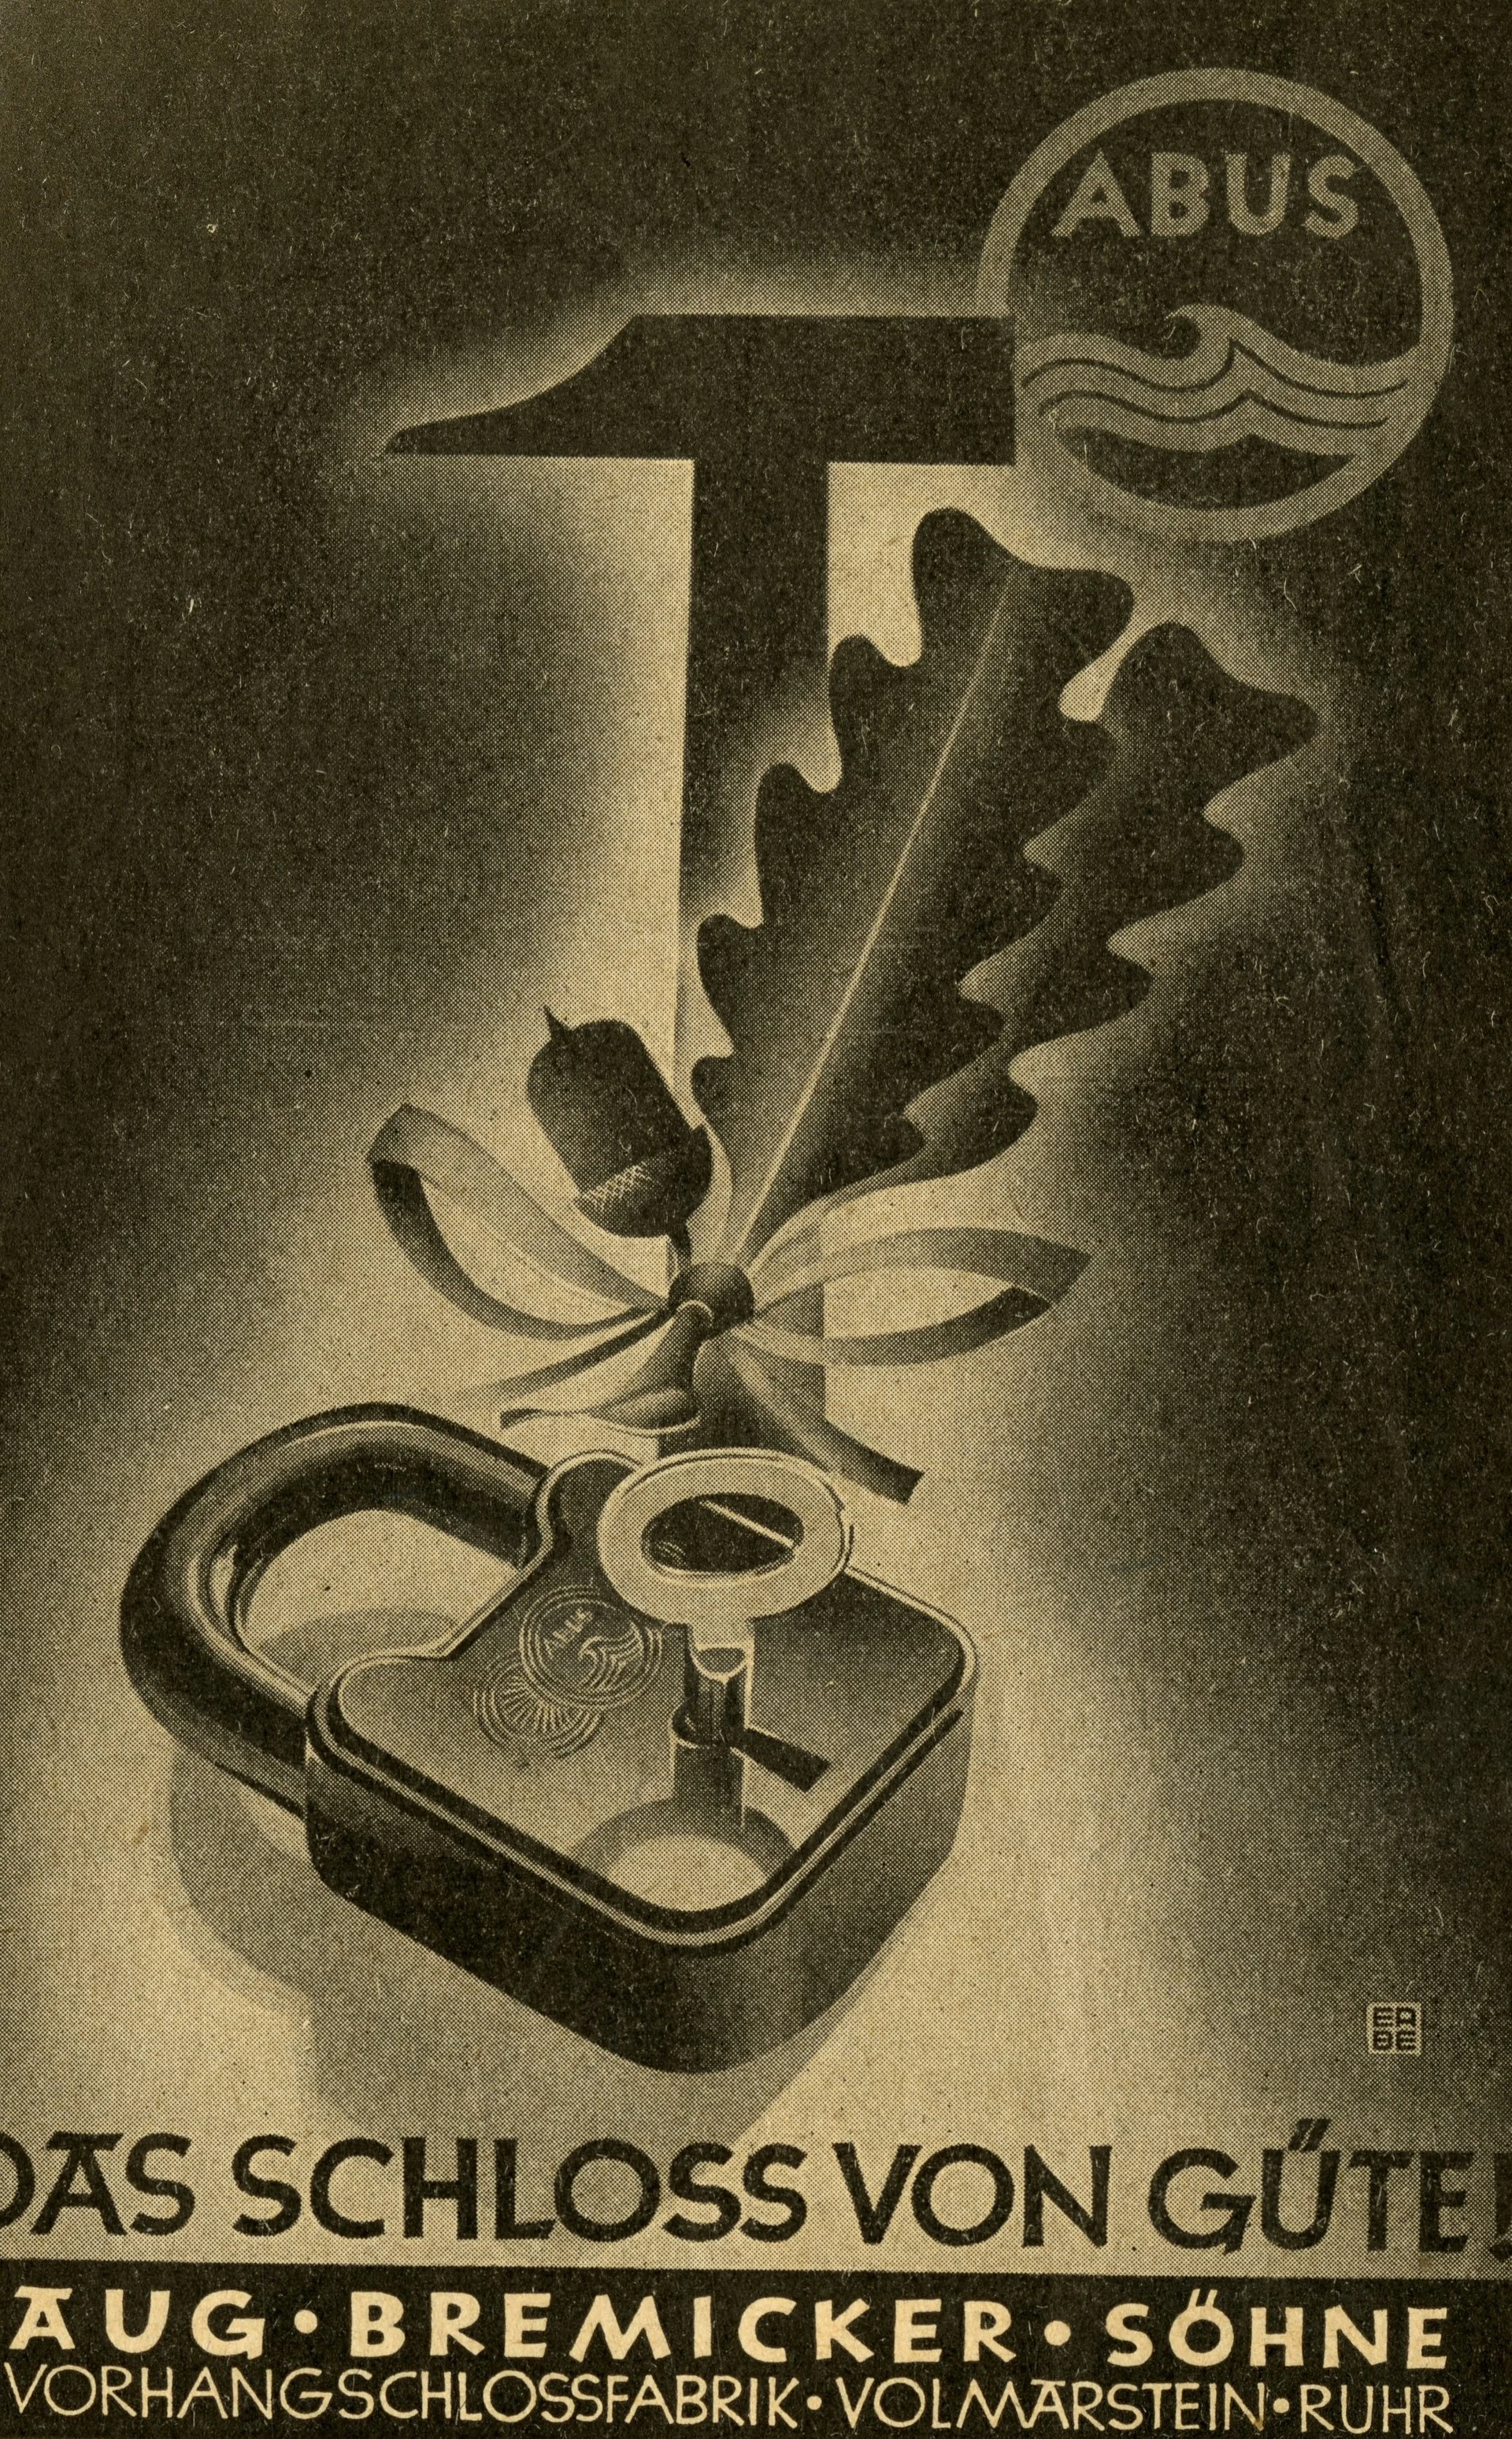 Une affiche de couleur sombre sur laquelle figure un cadenas accompagné d'une branche de gland et d'un marteau, avec l'inscription « Le cadenas de qualité ! » © ABUS